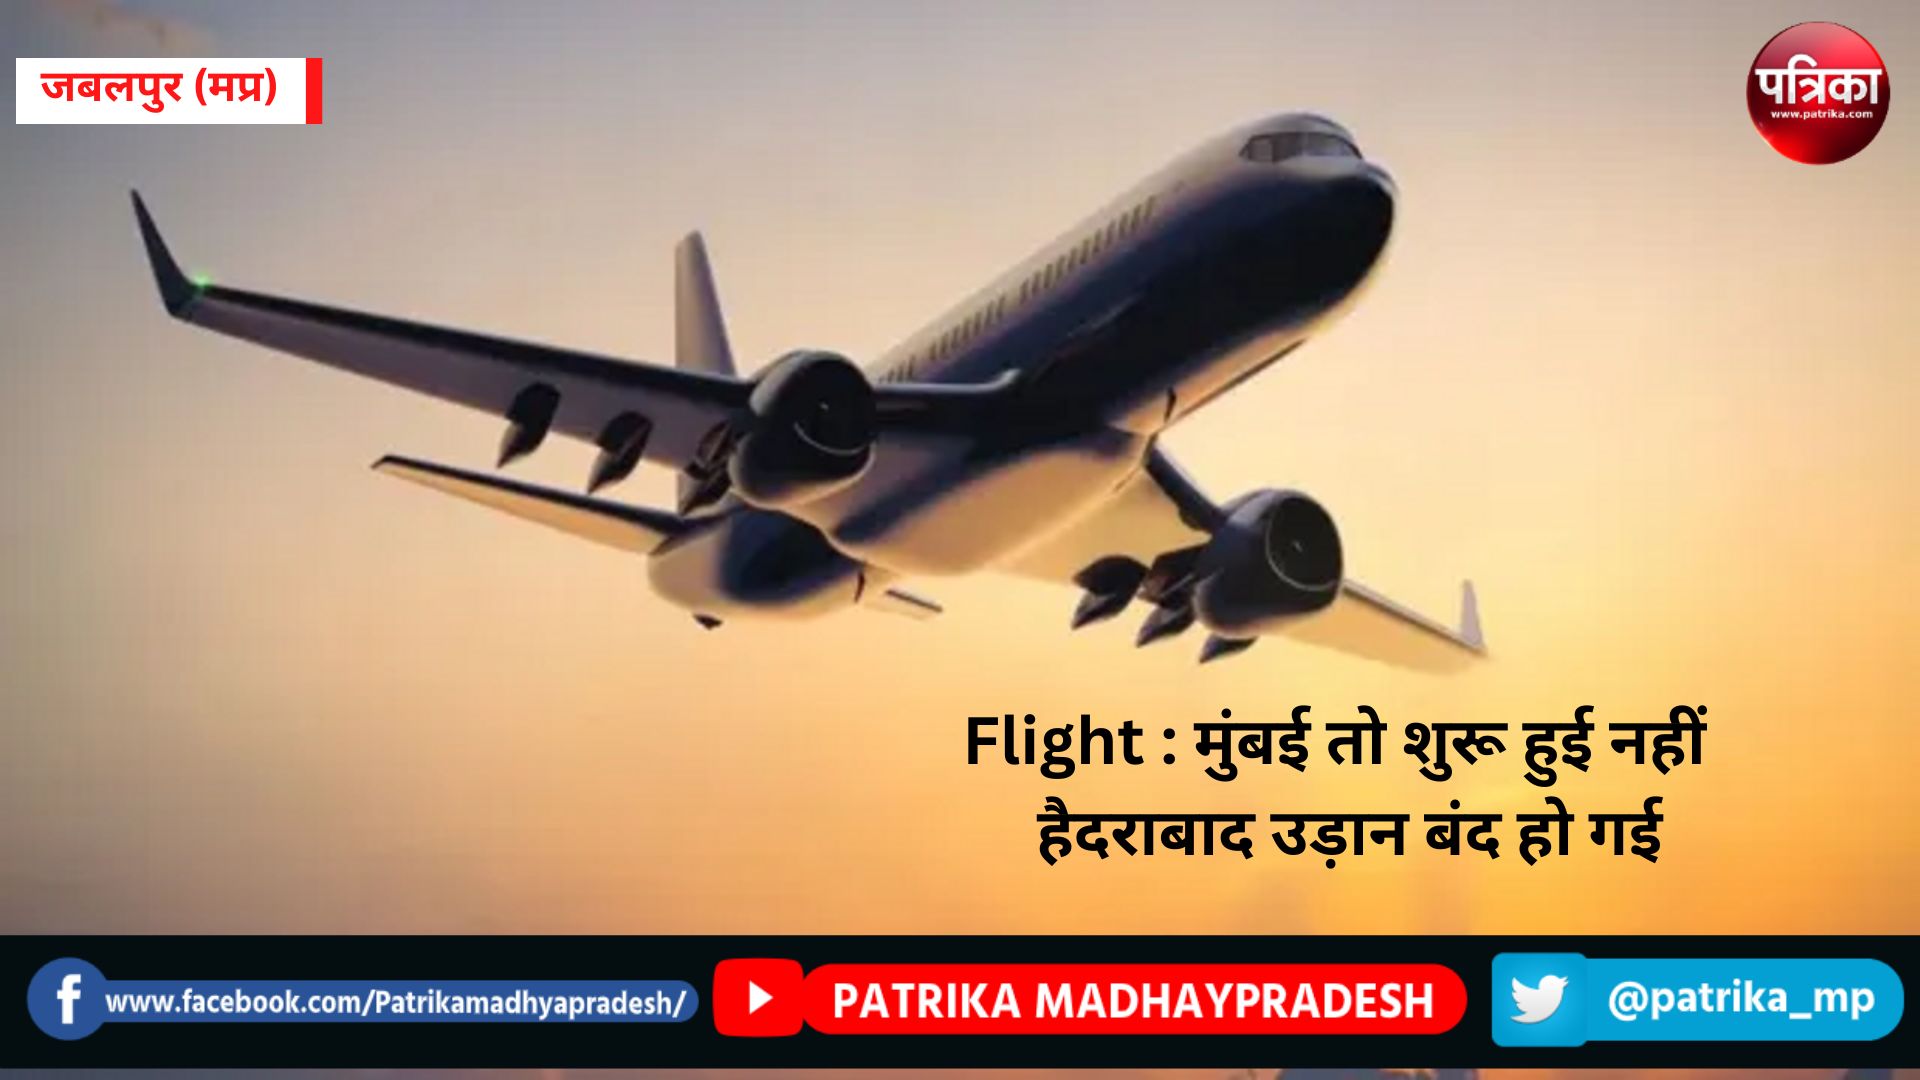 Flight : मुंबई तो शुरू हुई नहीं उल्टा हैदराबाद उड़ान बंद हो गई, फ्लायर्स परेशान